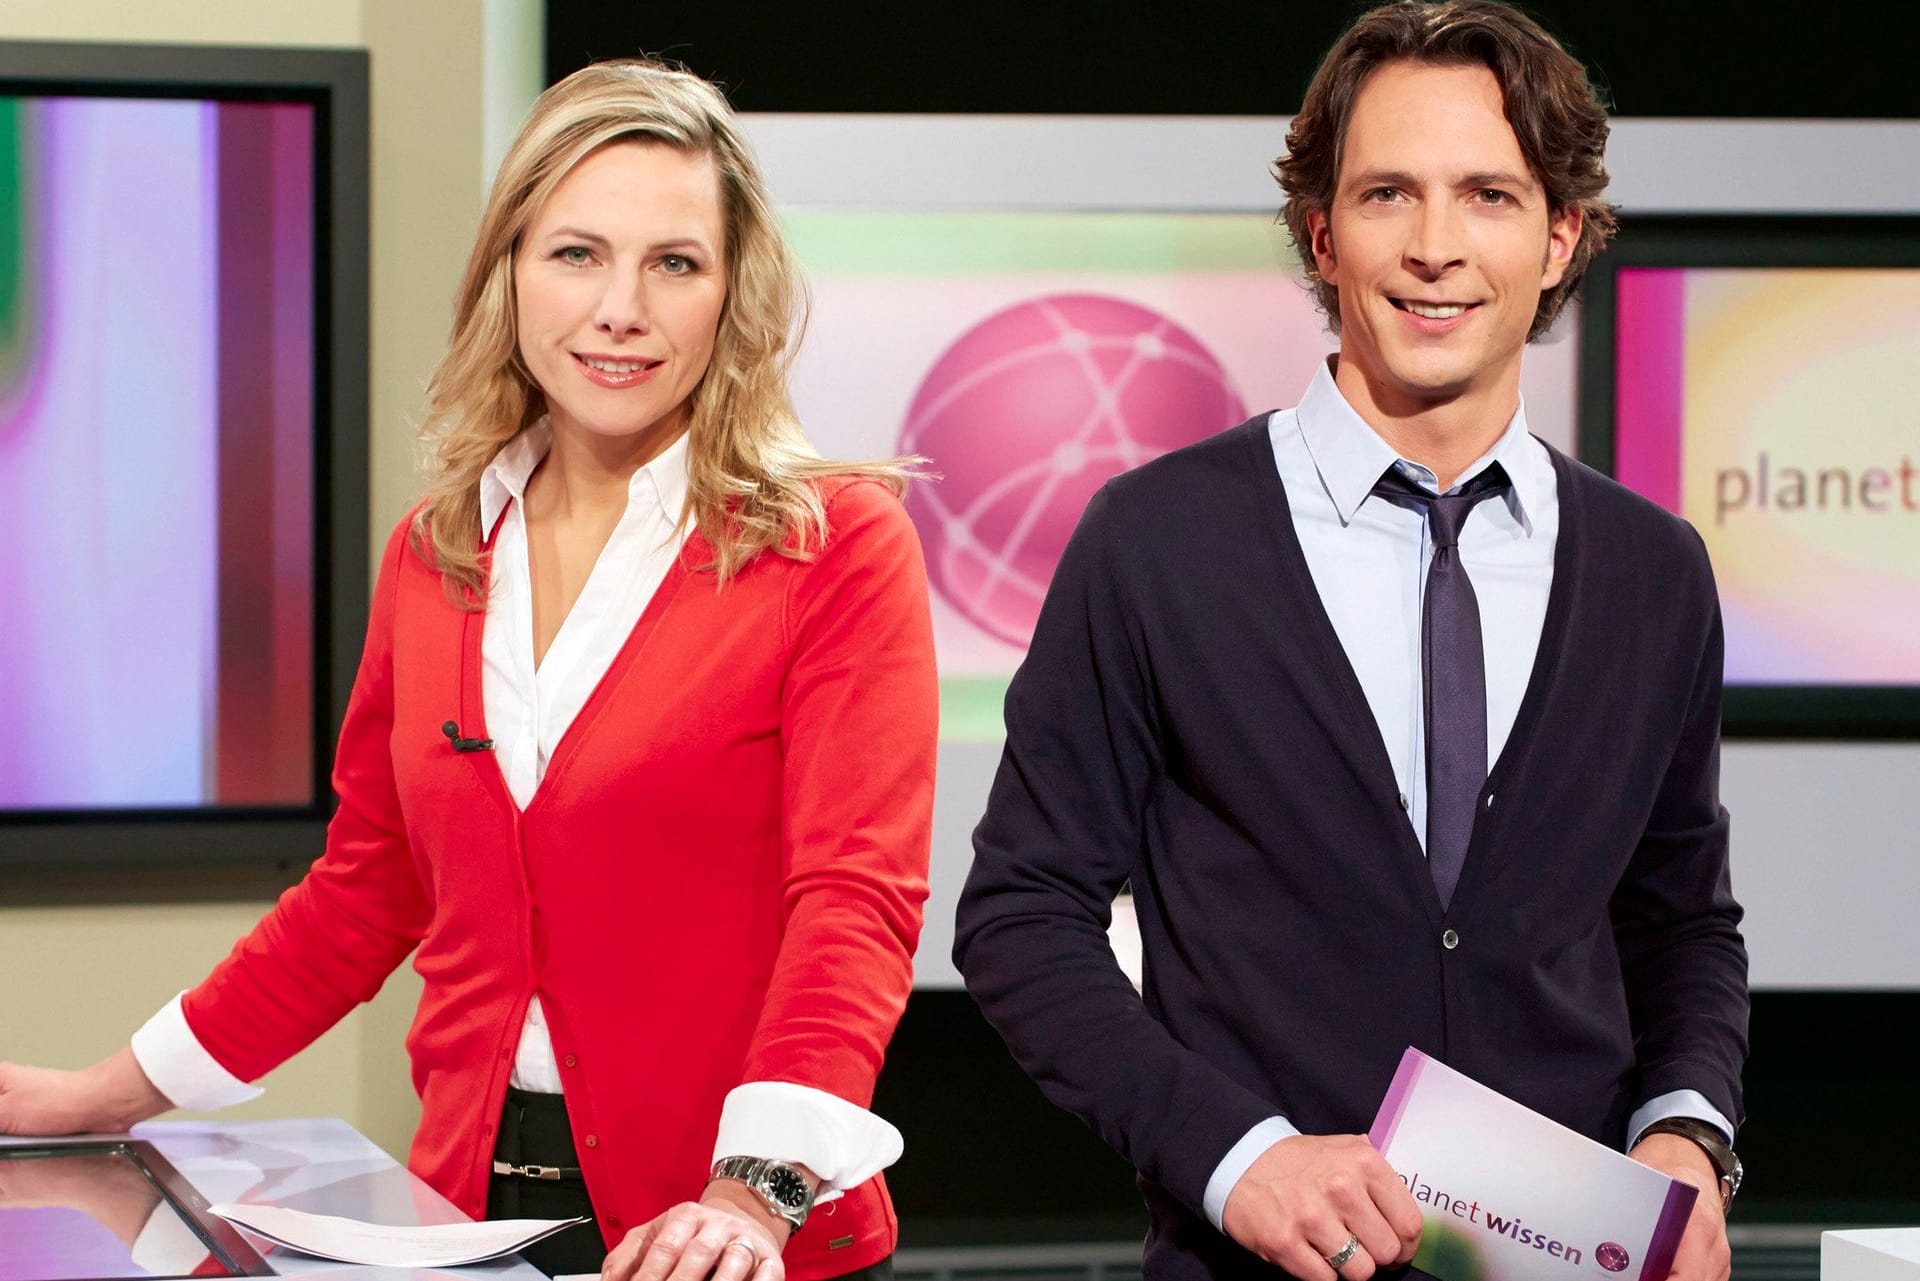 Andrea Grießmann und Jo Hiller führen im WDR durch "Planet Wissen".